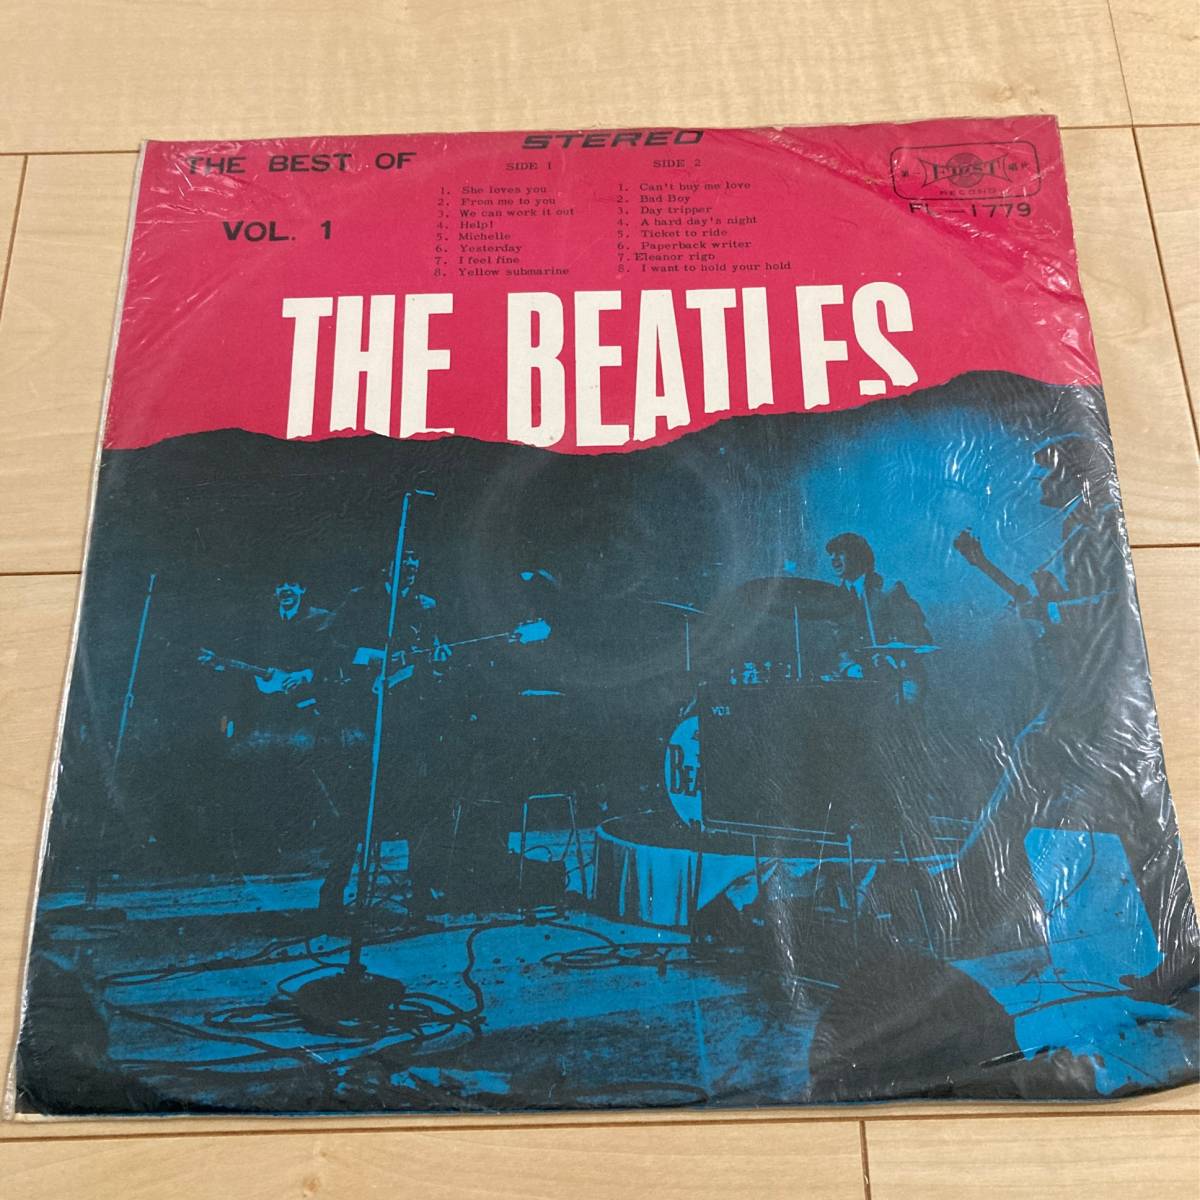 u025 LP Beatles The Best of The Beatles VoL.1 #THE BEATLES / Taiwan TAIWAN первый . одна сторона FL-1779